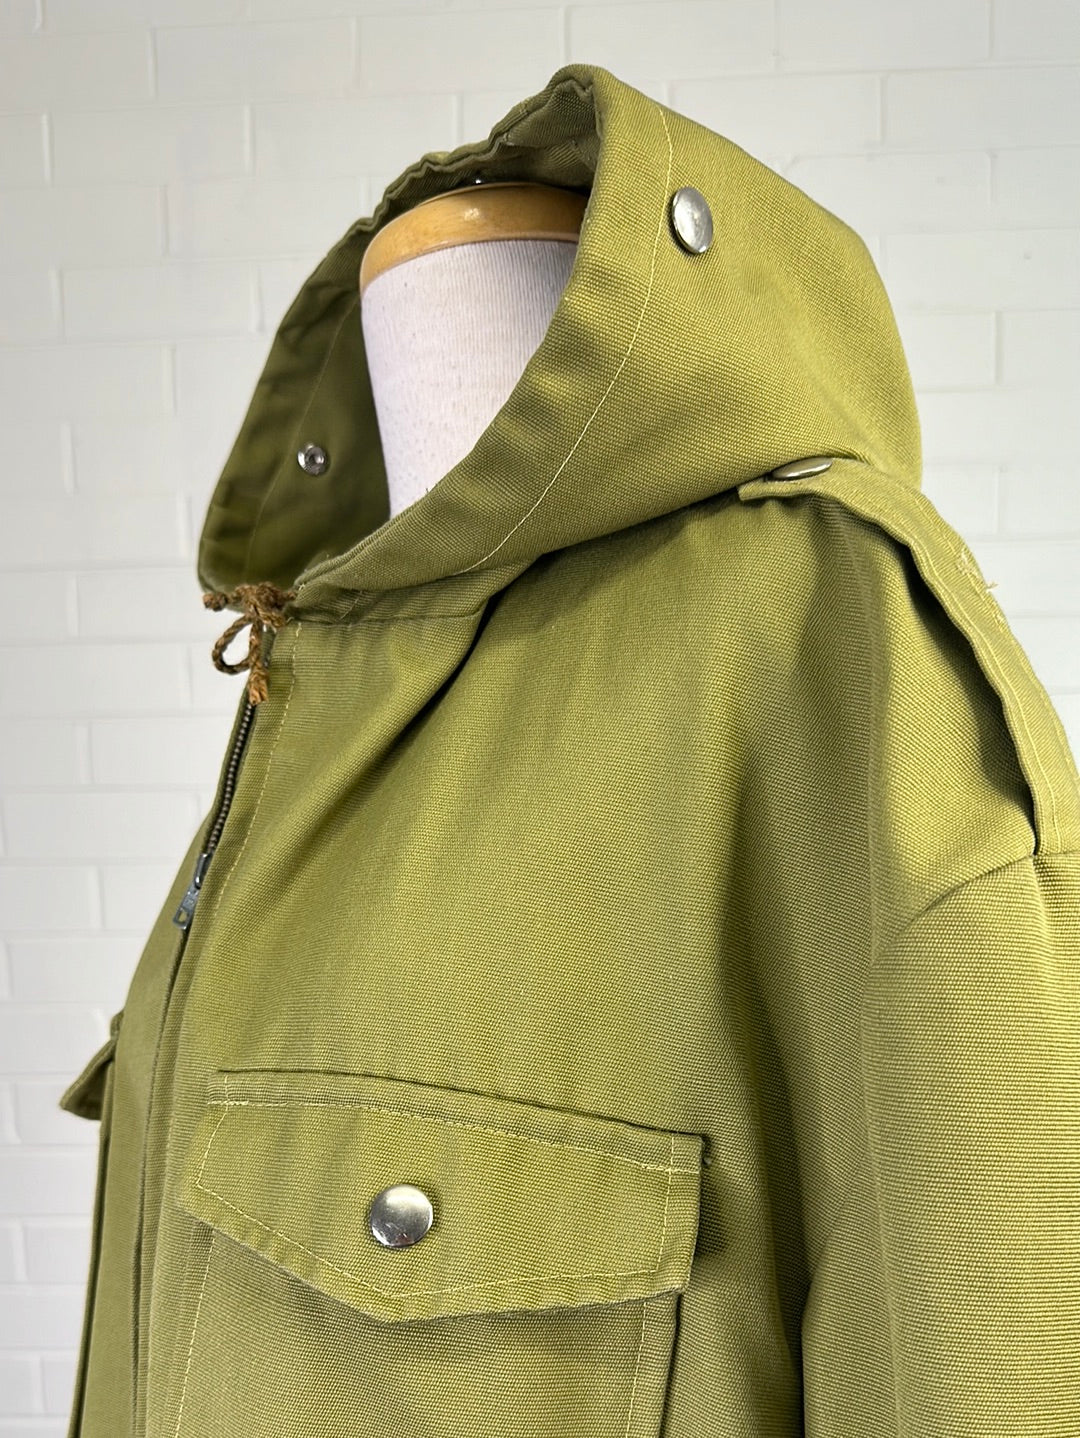 VEB Magdeburger Oberbekleigung | East Germany (GDR) | vintage 80's | coat | size 18 | zip front